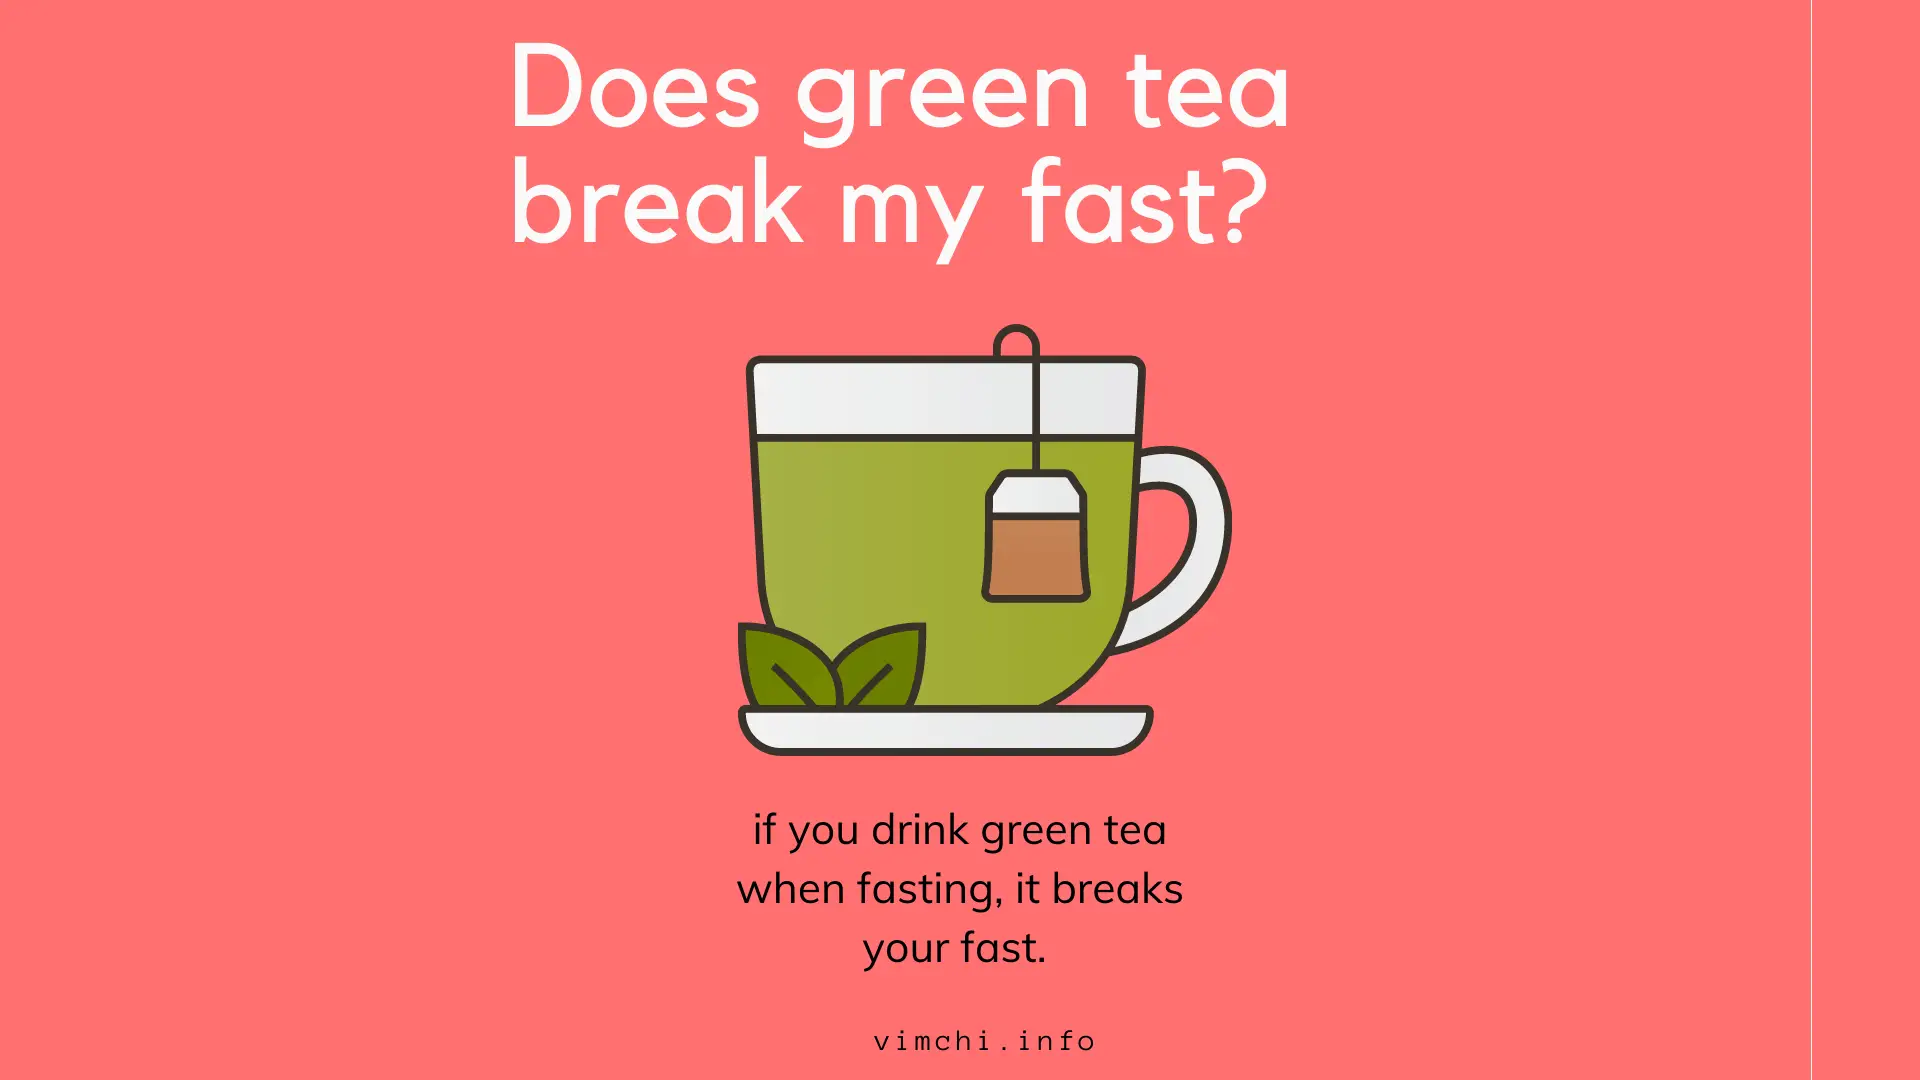 Does green tea break my fast